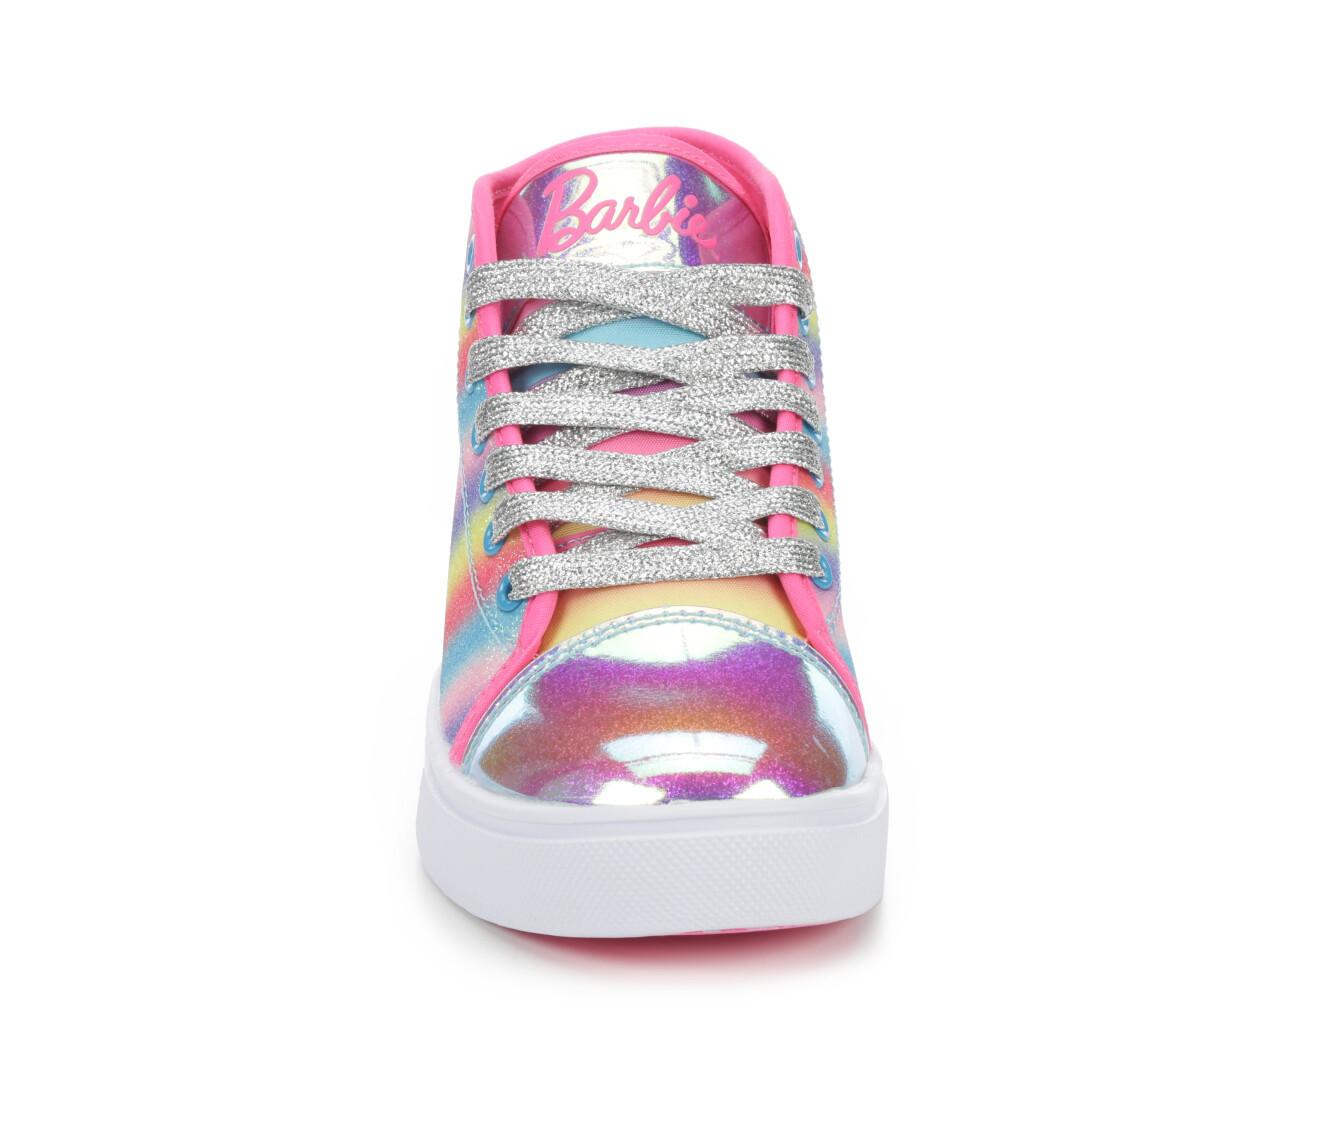 Girls' Heelys Veloz Barbie Sneakers